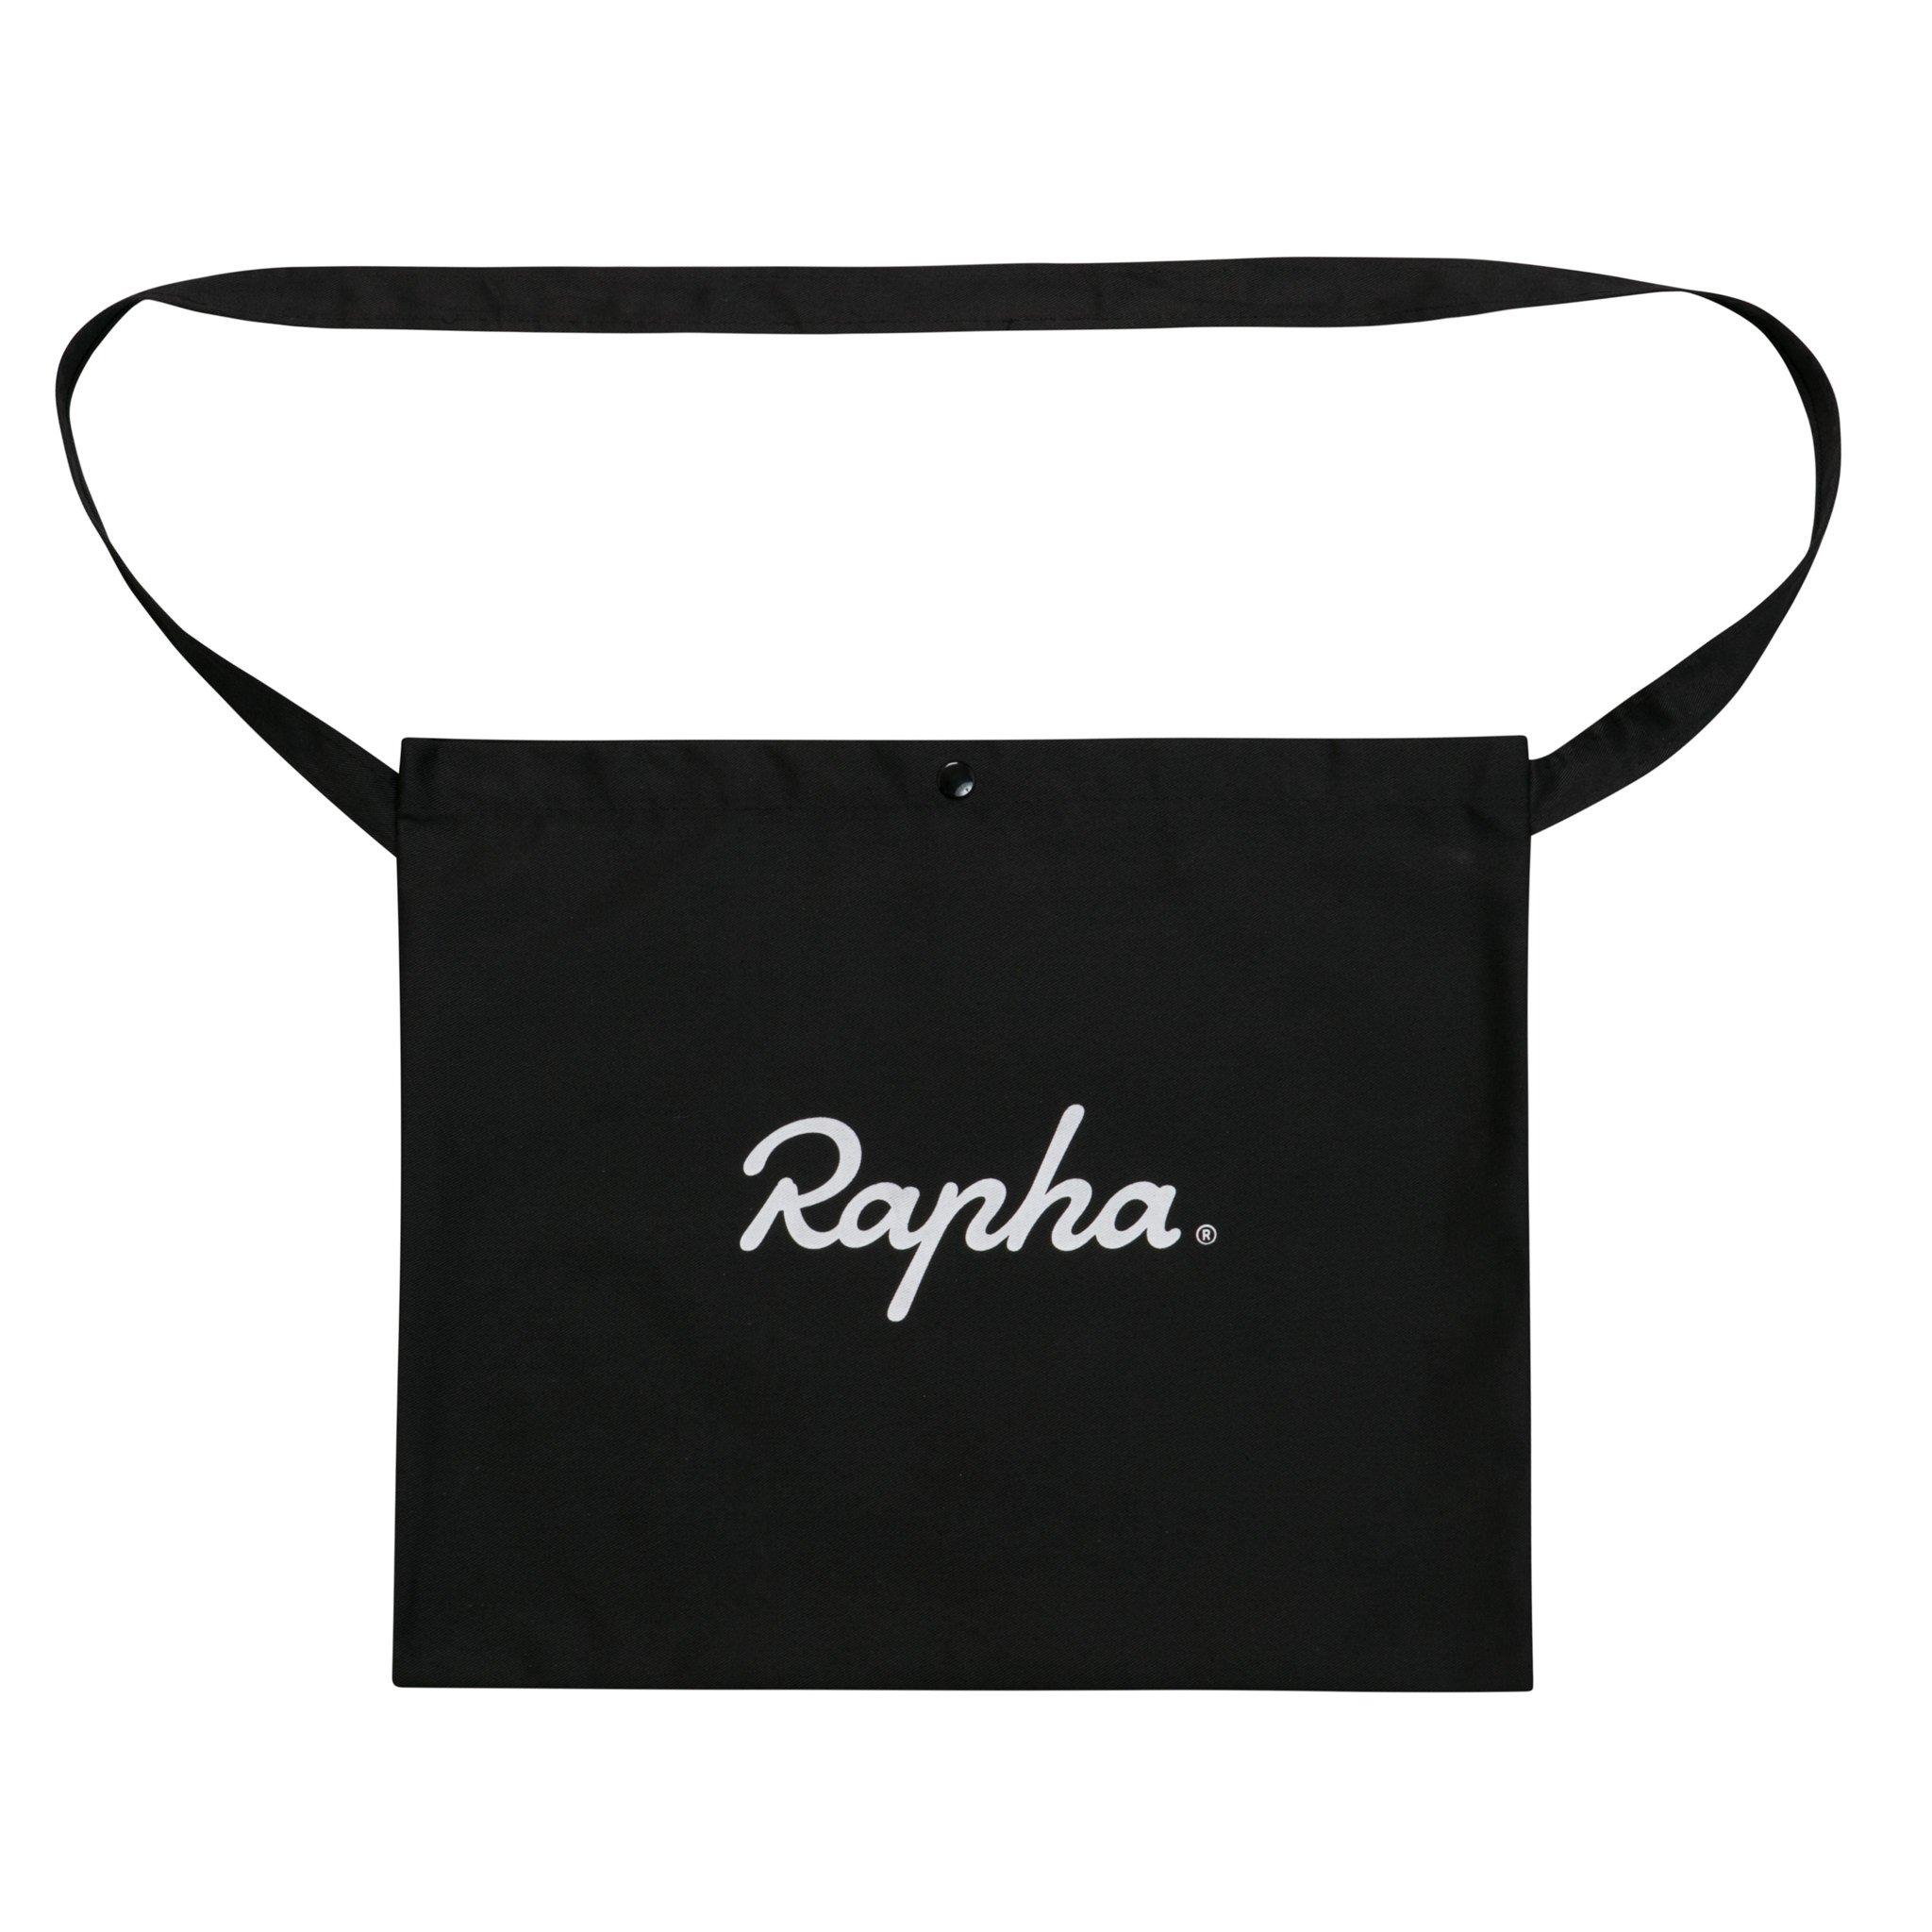 Rapha Logo - LogoDix